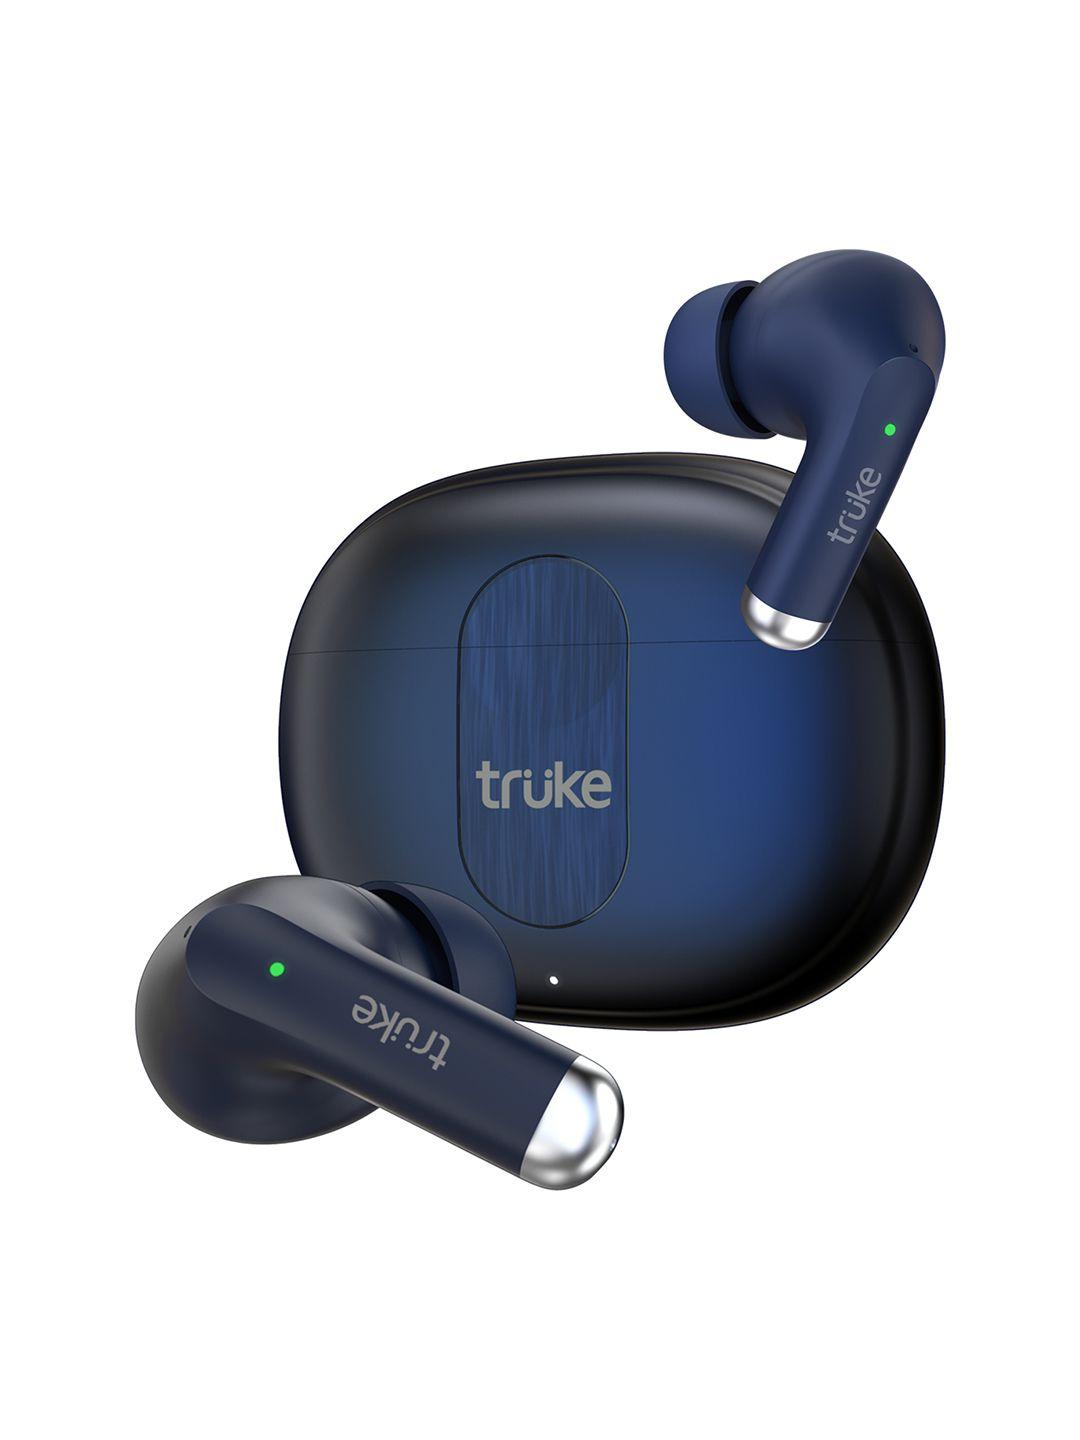 truke buds a1 true wireless earbuds with 30db hybrid anc